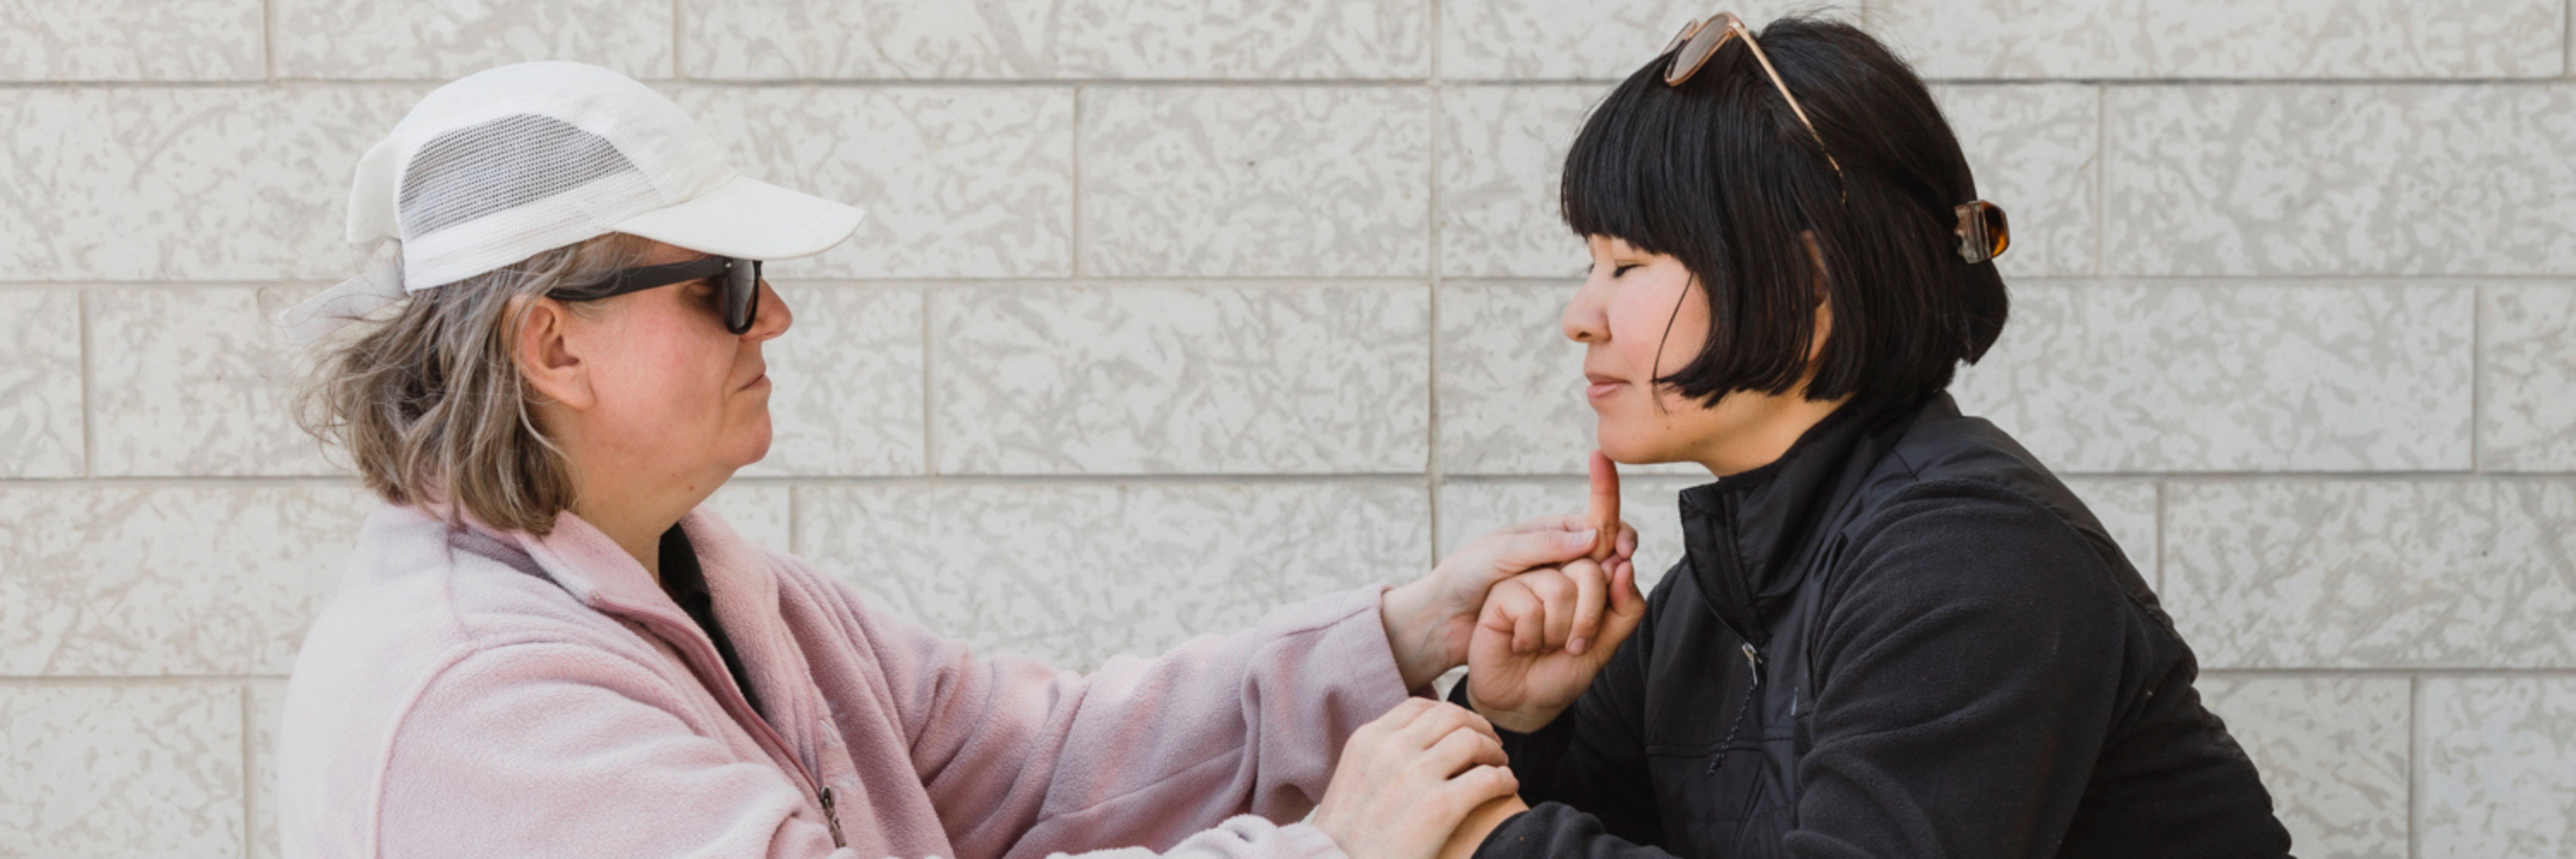 Une femme utilise la langue des signes tactile pour communiquer avec un client sourd et aveugle.